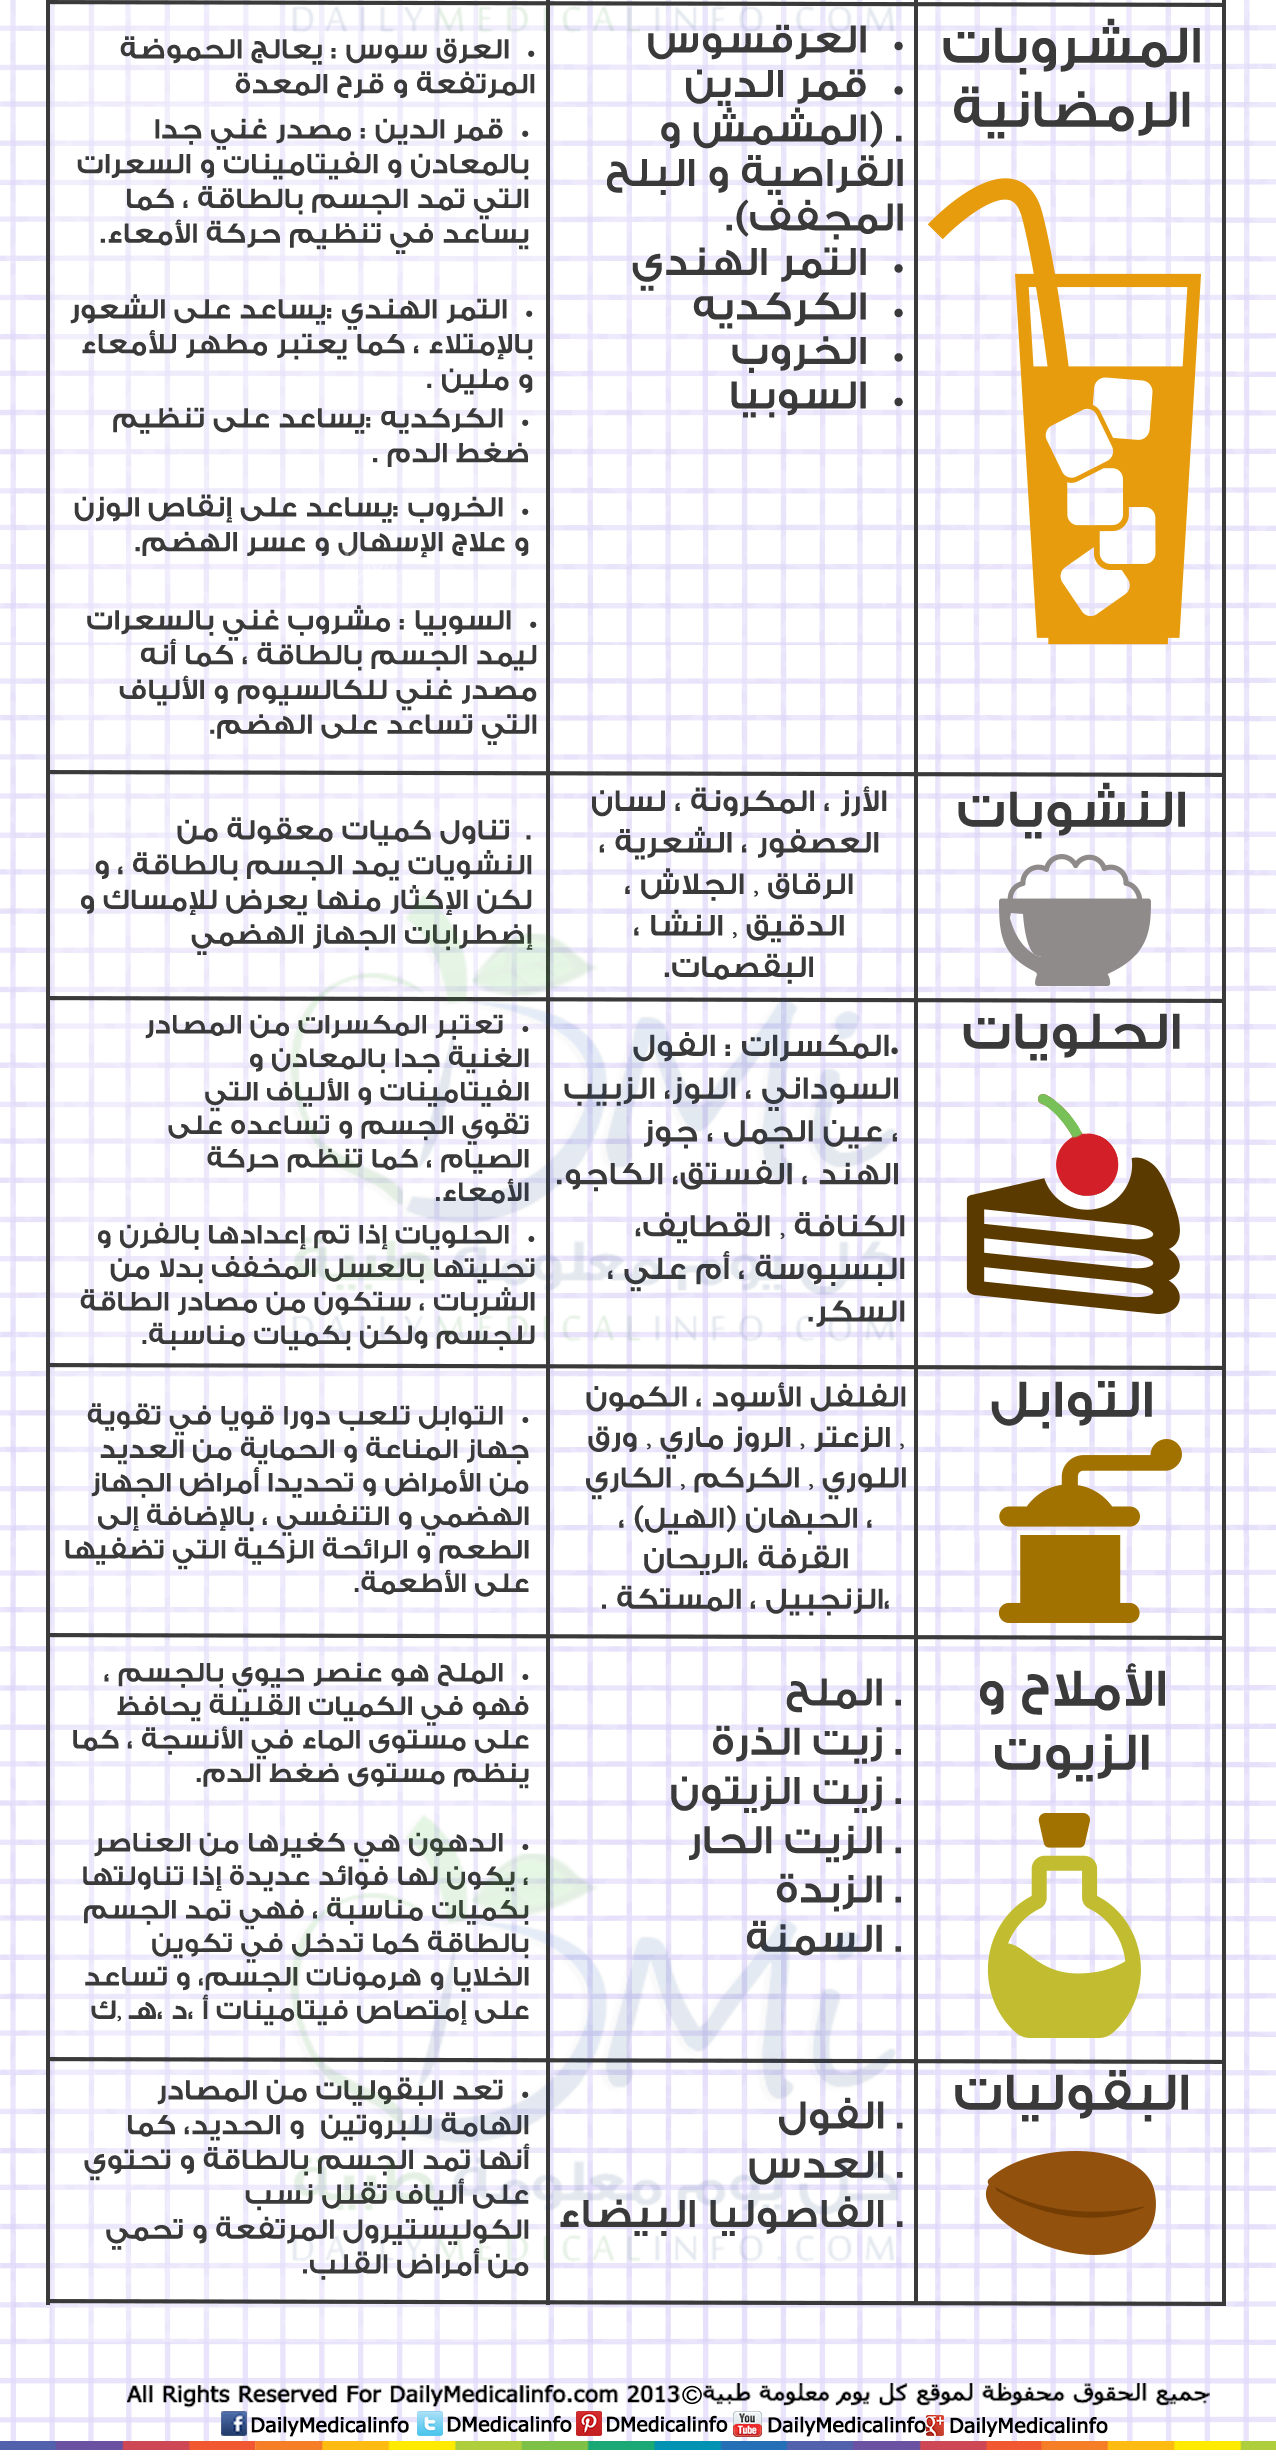 نصائح للتسوق قبل شراء احتياجات رمضان وقائمة بأهم الأغذية الصحية صحيفة تواصل الالكترونية